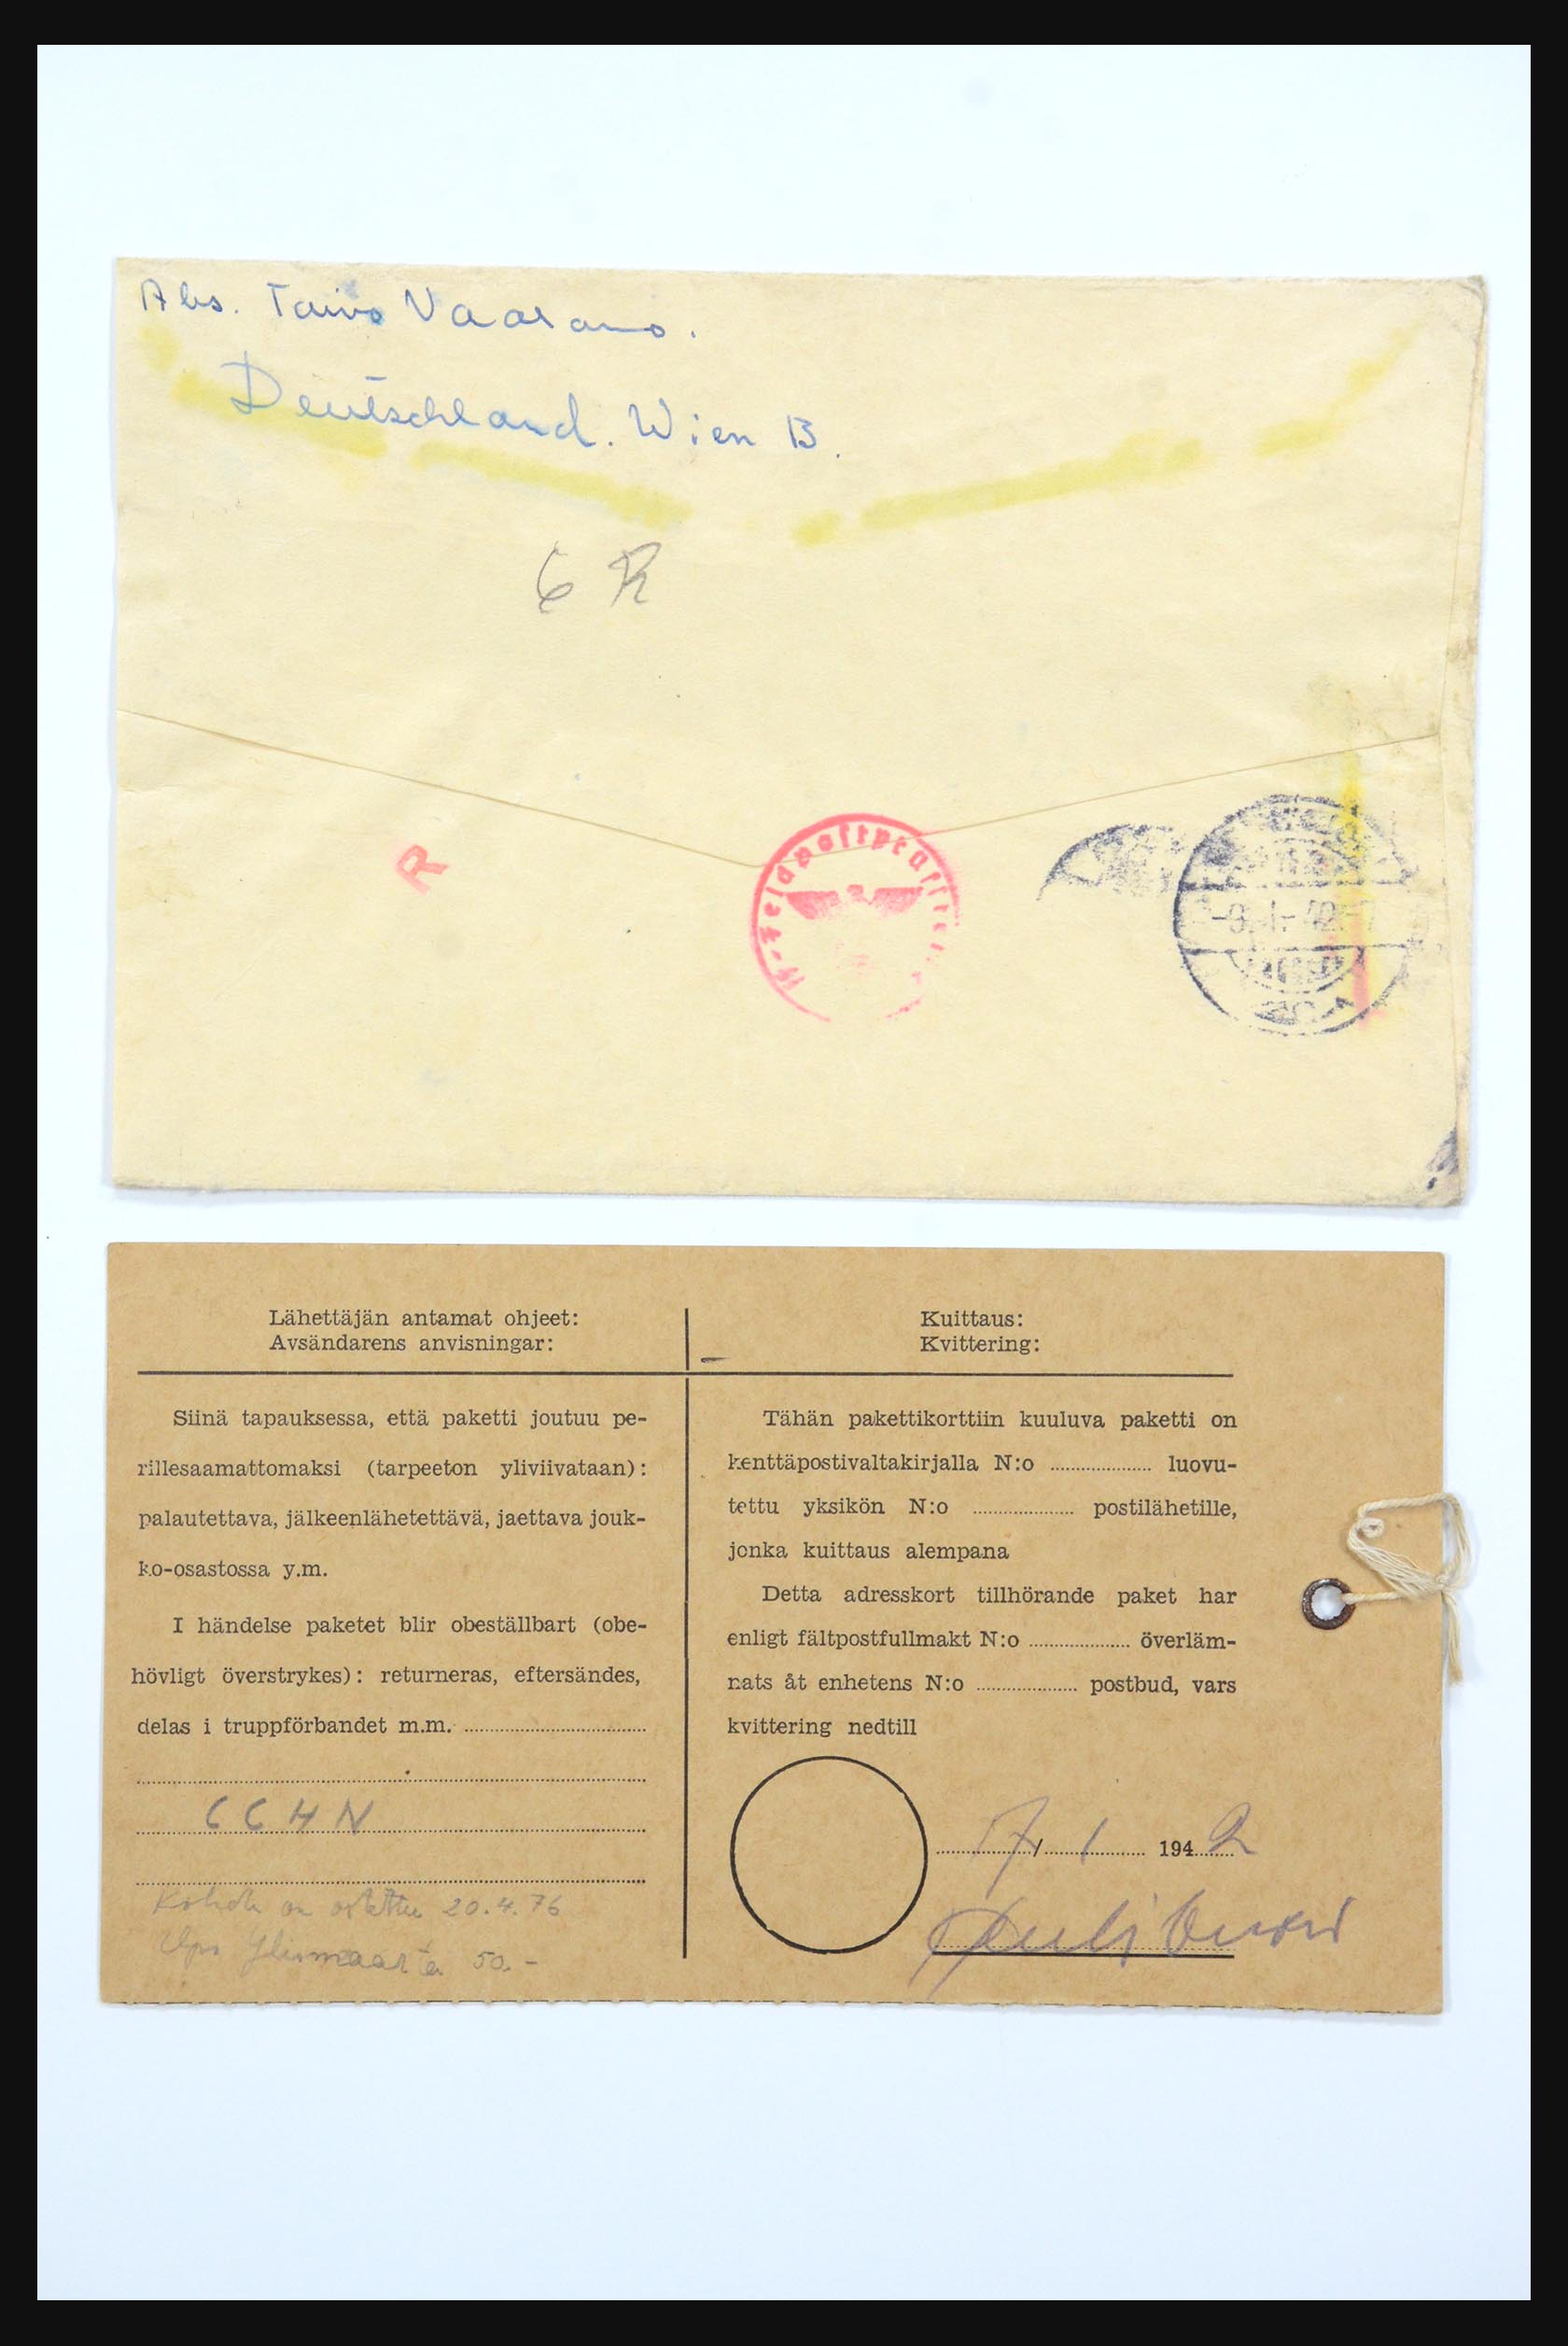 31658 081 - 31658 Finland brieven 1833-1960.